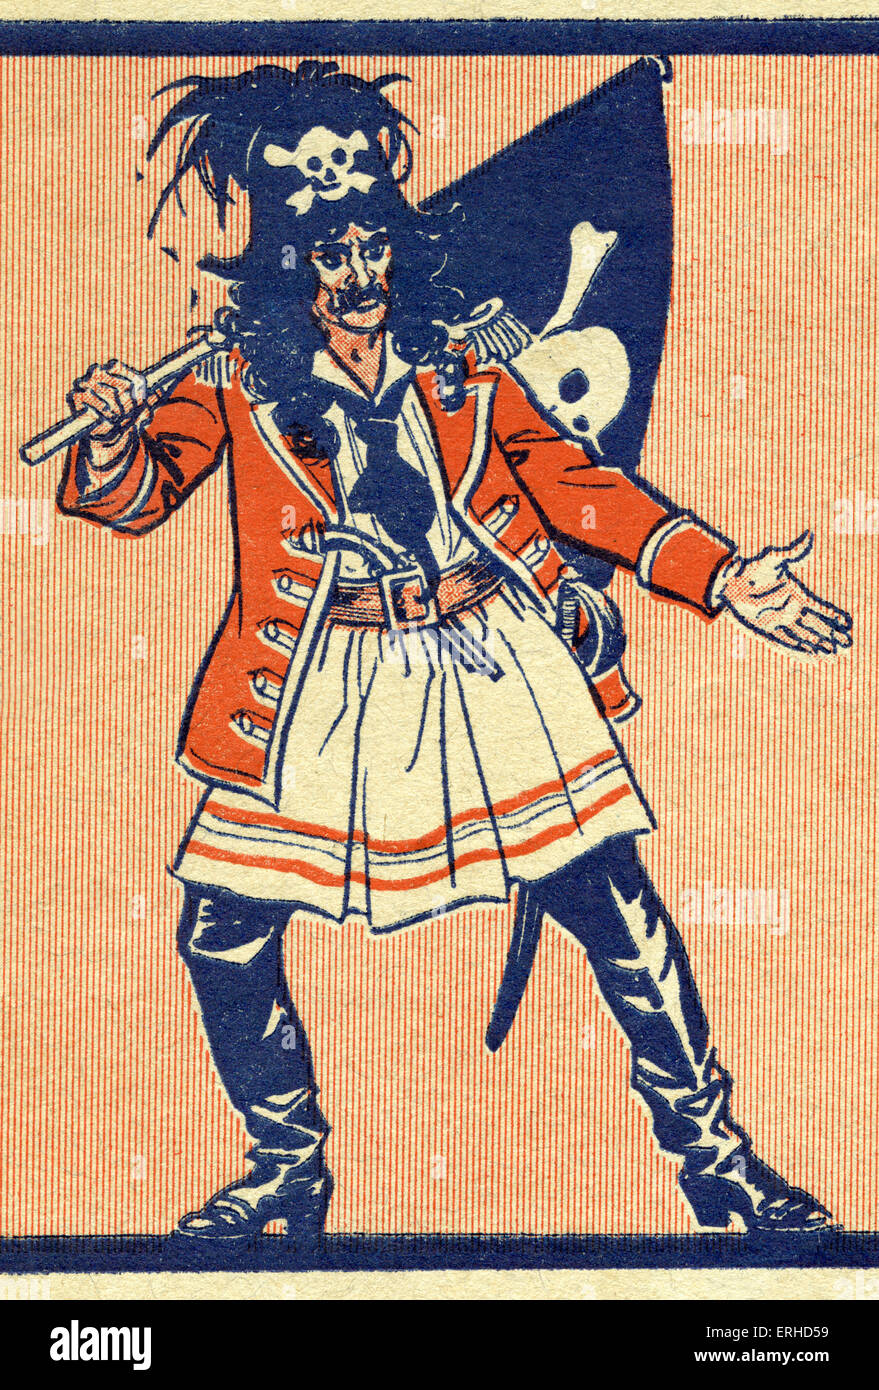 Pirat mit Totenkopf auf seinen Hut und winken die Jolly Roger Flagge auch mit Totenkopf.  (Illustration für Stockfoto